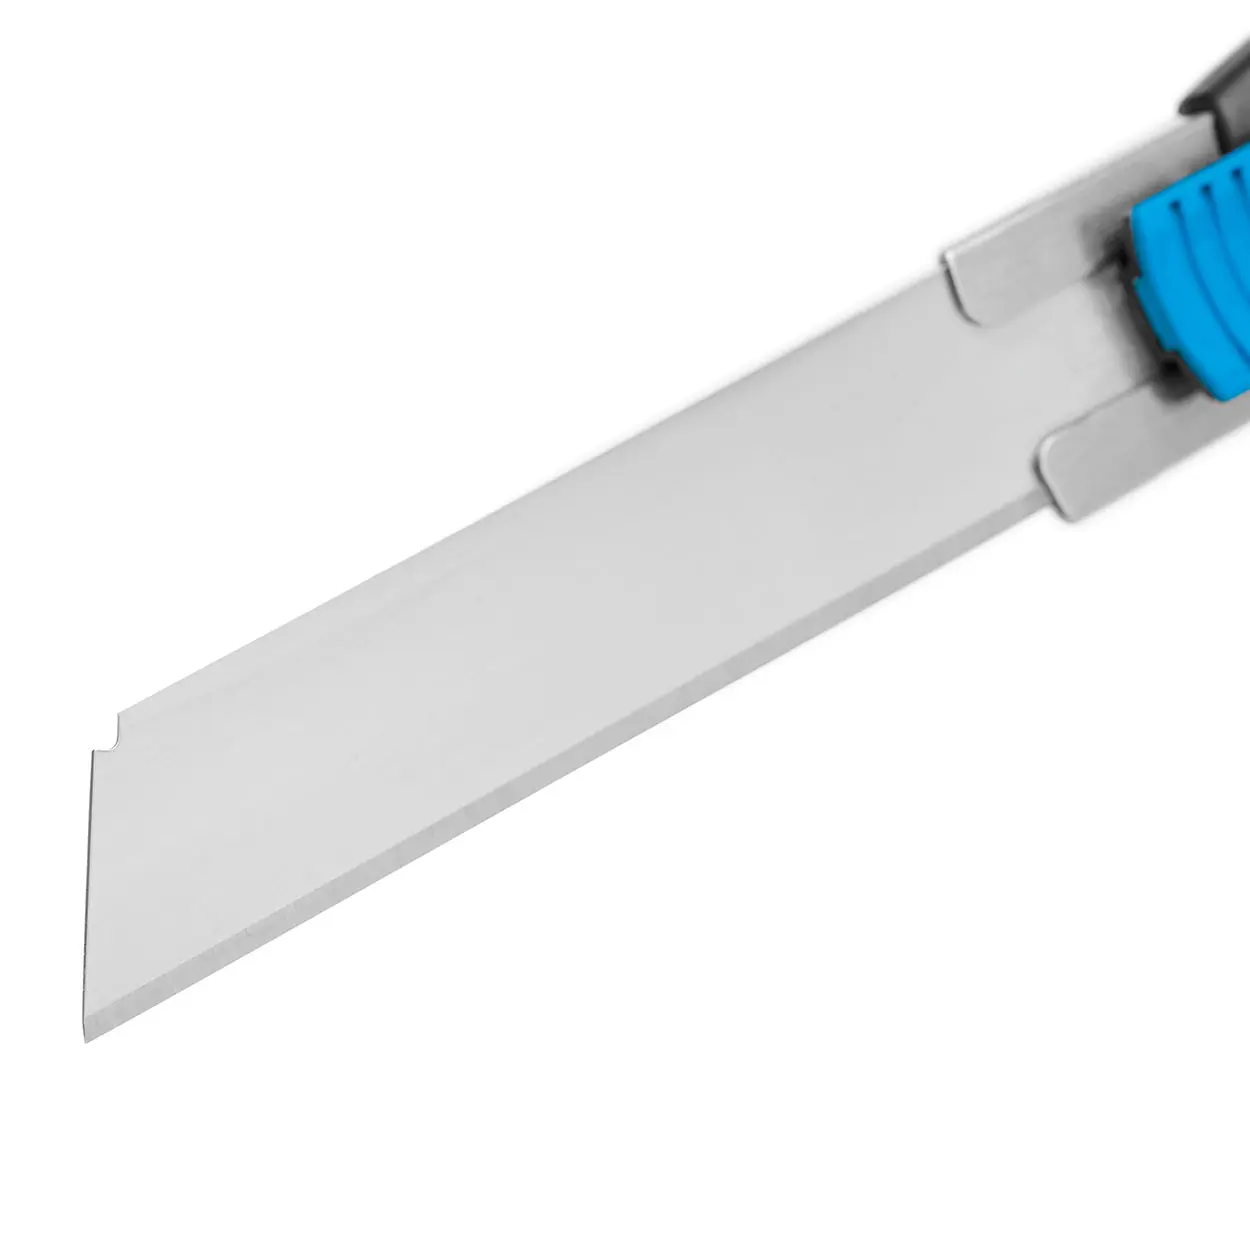 SECUNORM 380 - Bezpečnostní nůž s velmi dlouhou čepelí